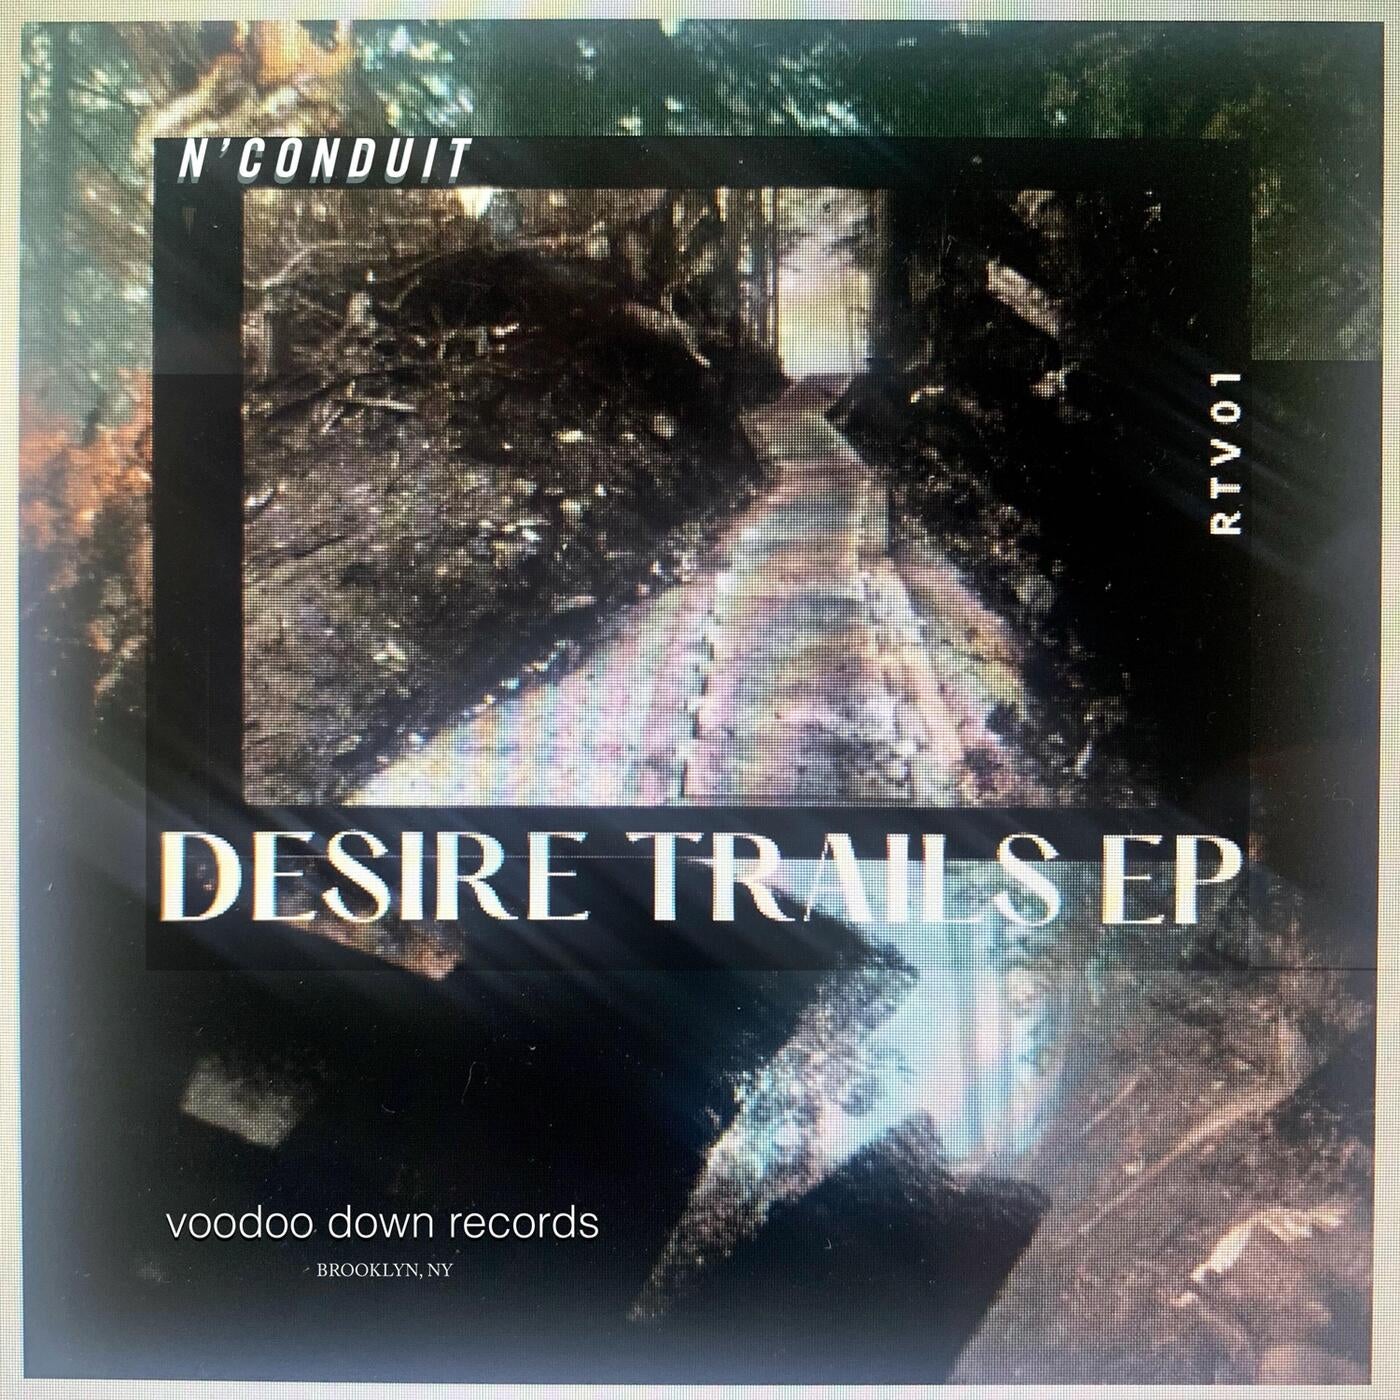 Desire Trails EP